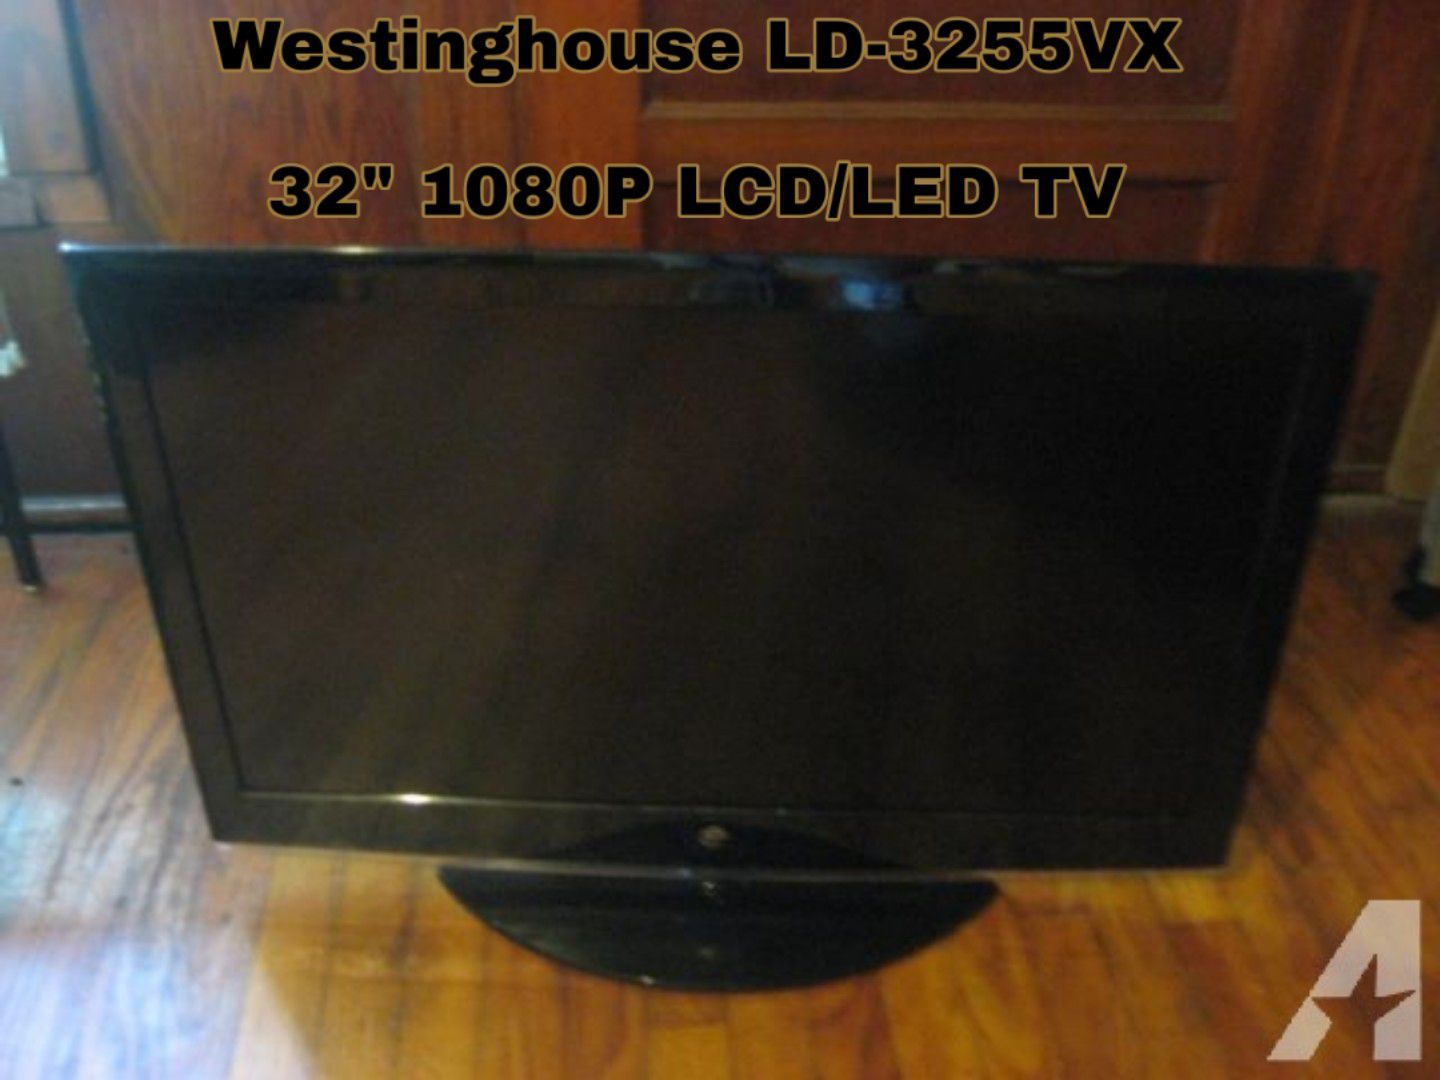 .Westinghouse LD-3255VX Review 32" 1080P 120HZ LCD/LED TV